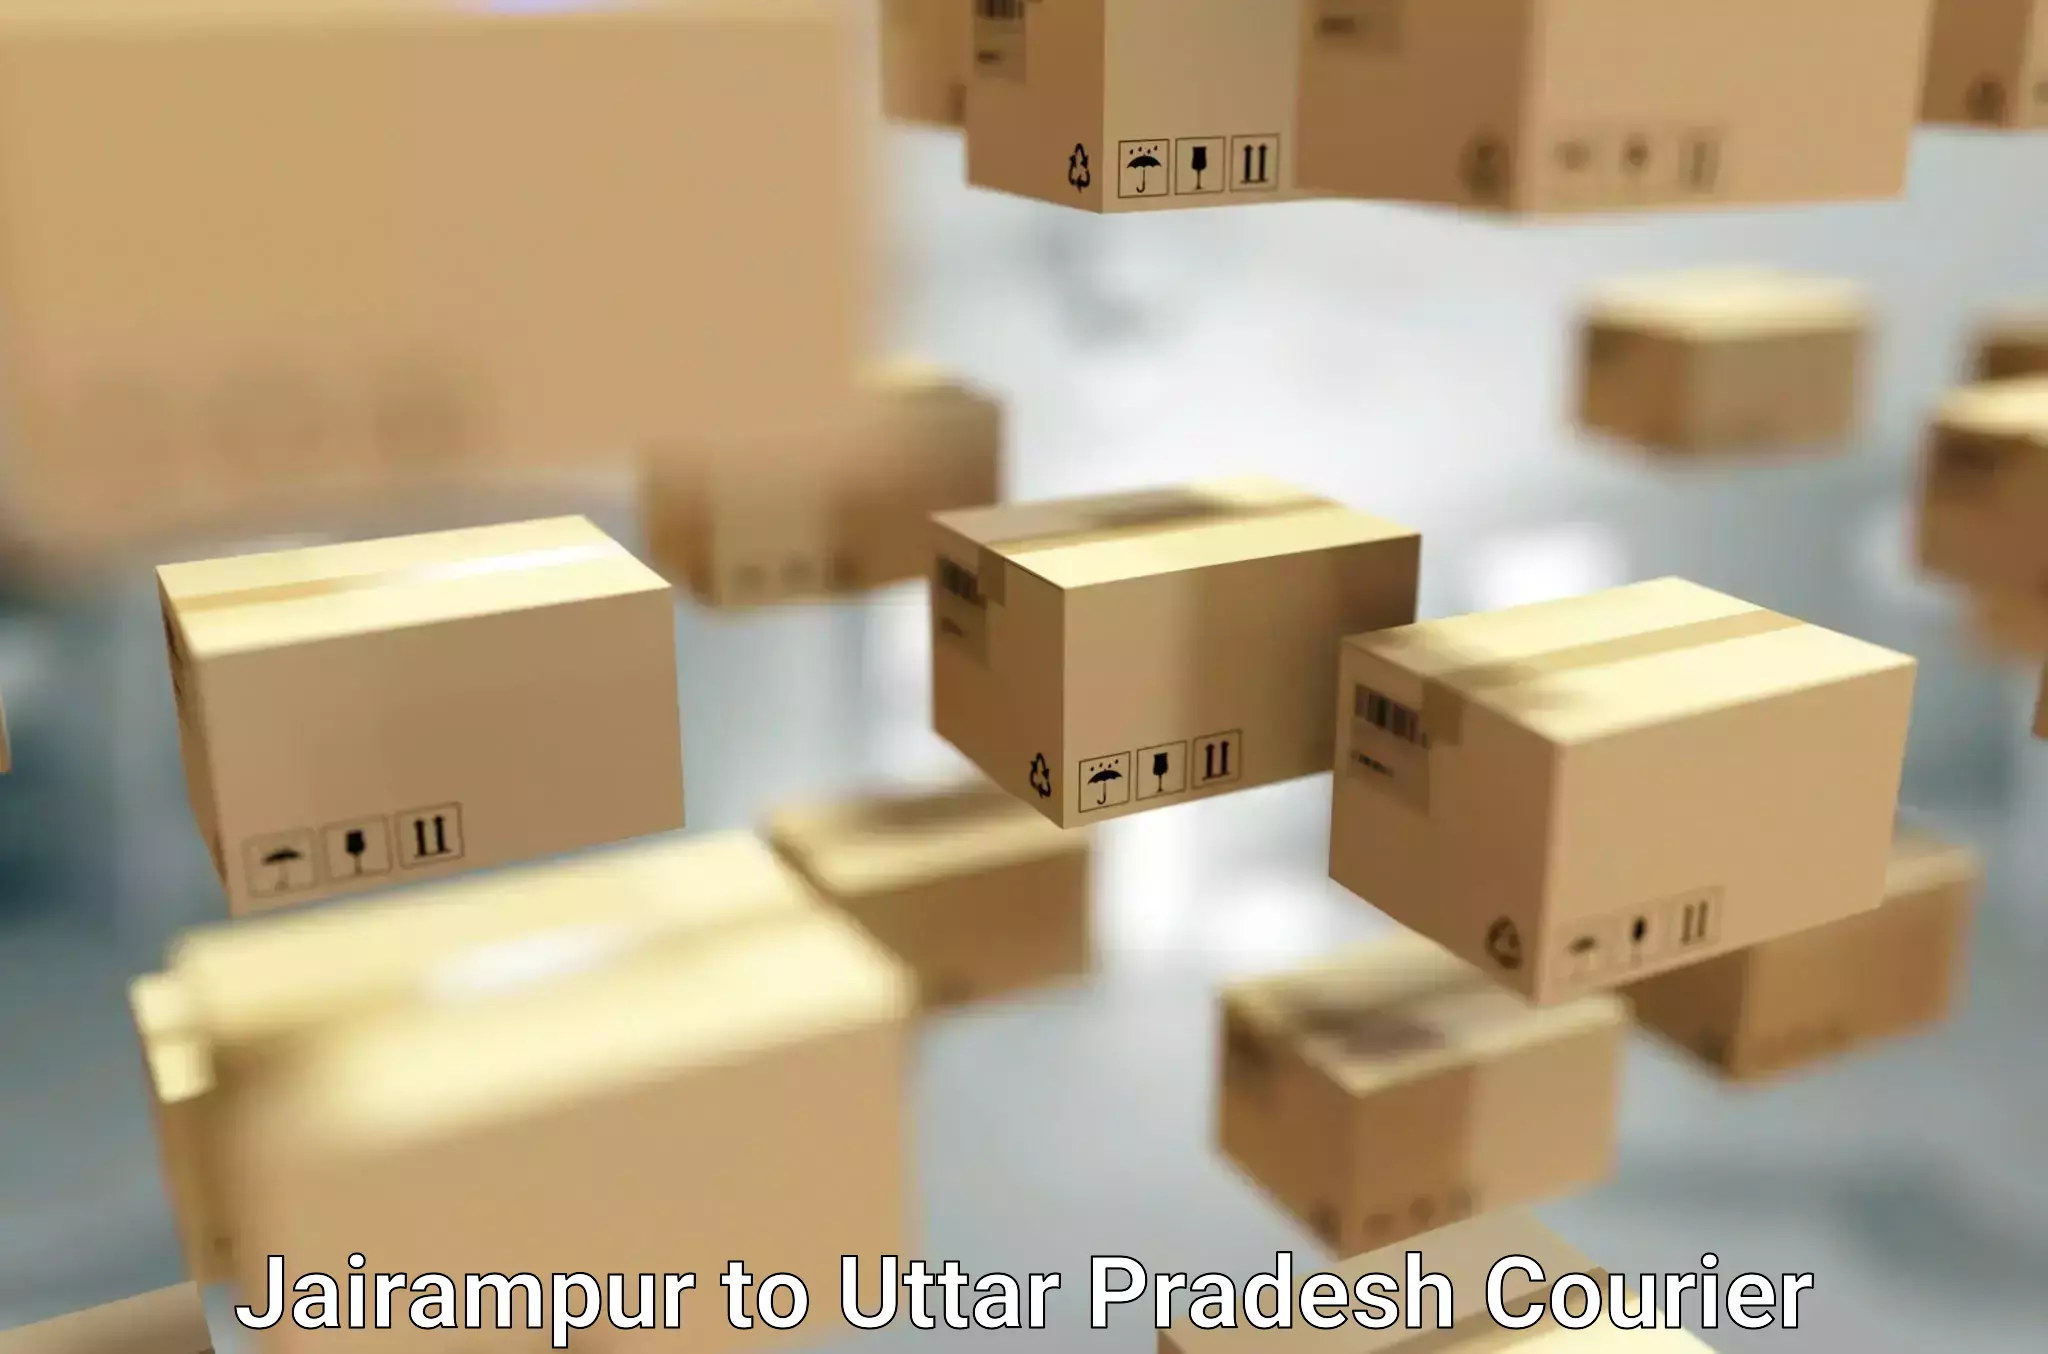 Efficient relocation services Jairampur to Uttar Pradesh